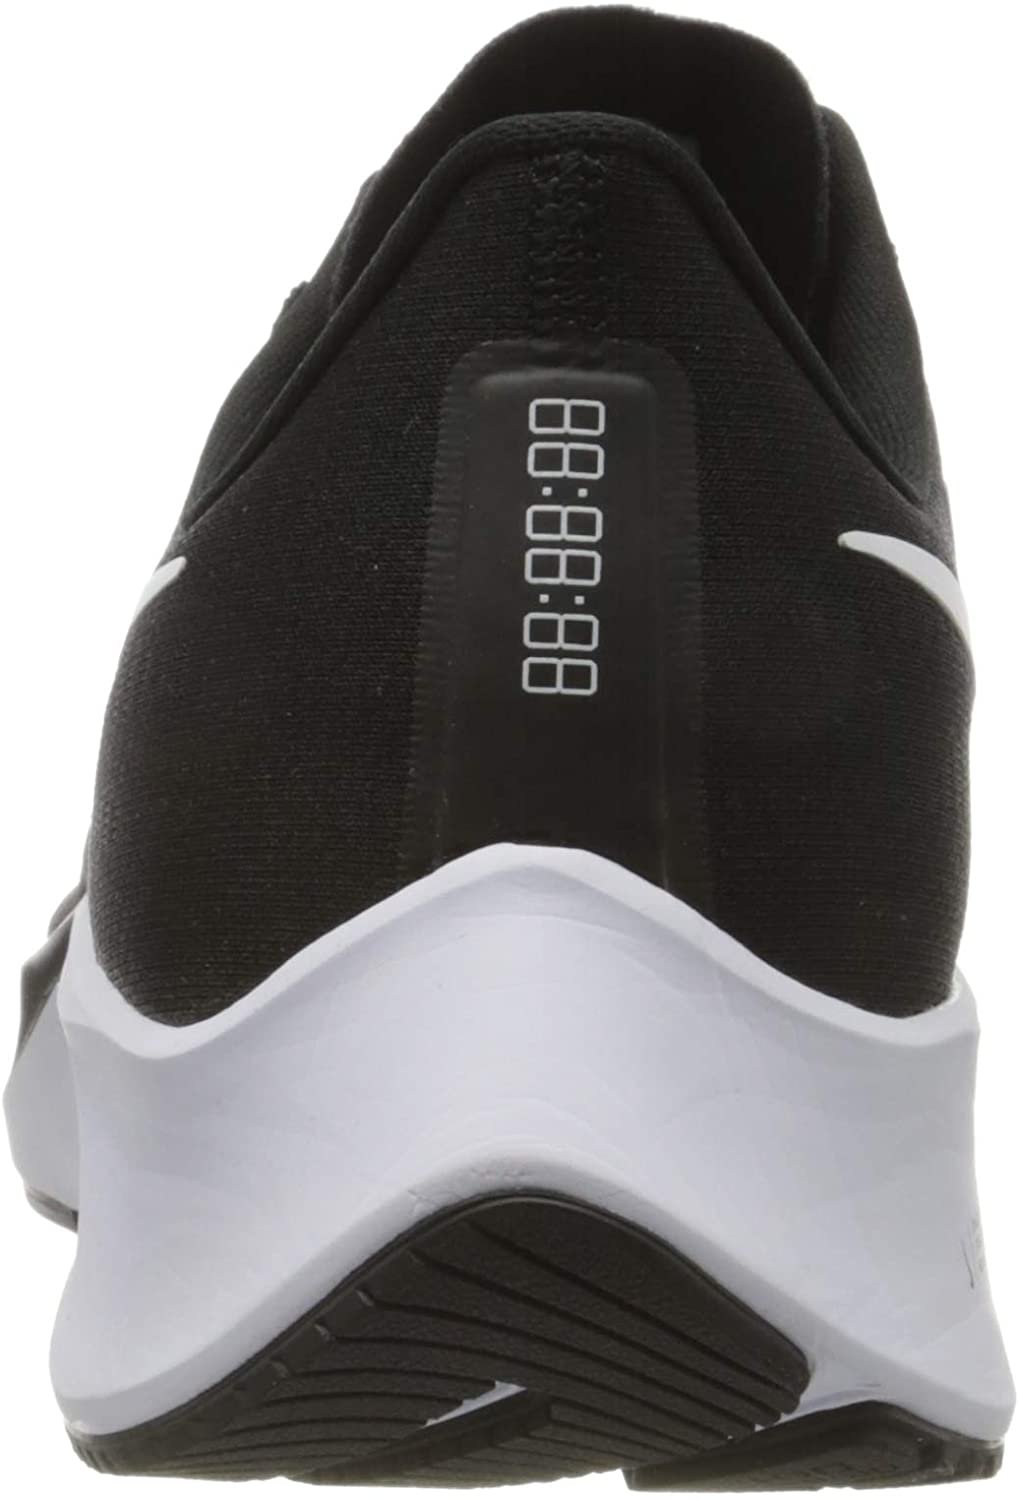 Nike Air Zoom Pegasus 37 Mens Running Casual Shoe Bq9646-002 Size 11.5 Black/White - image 3 of 7